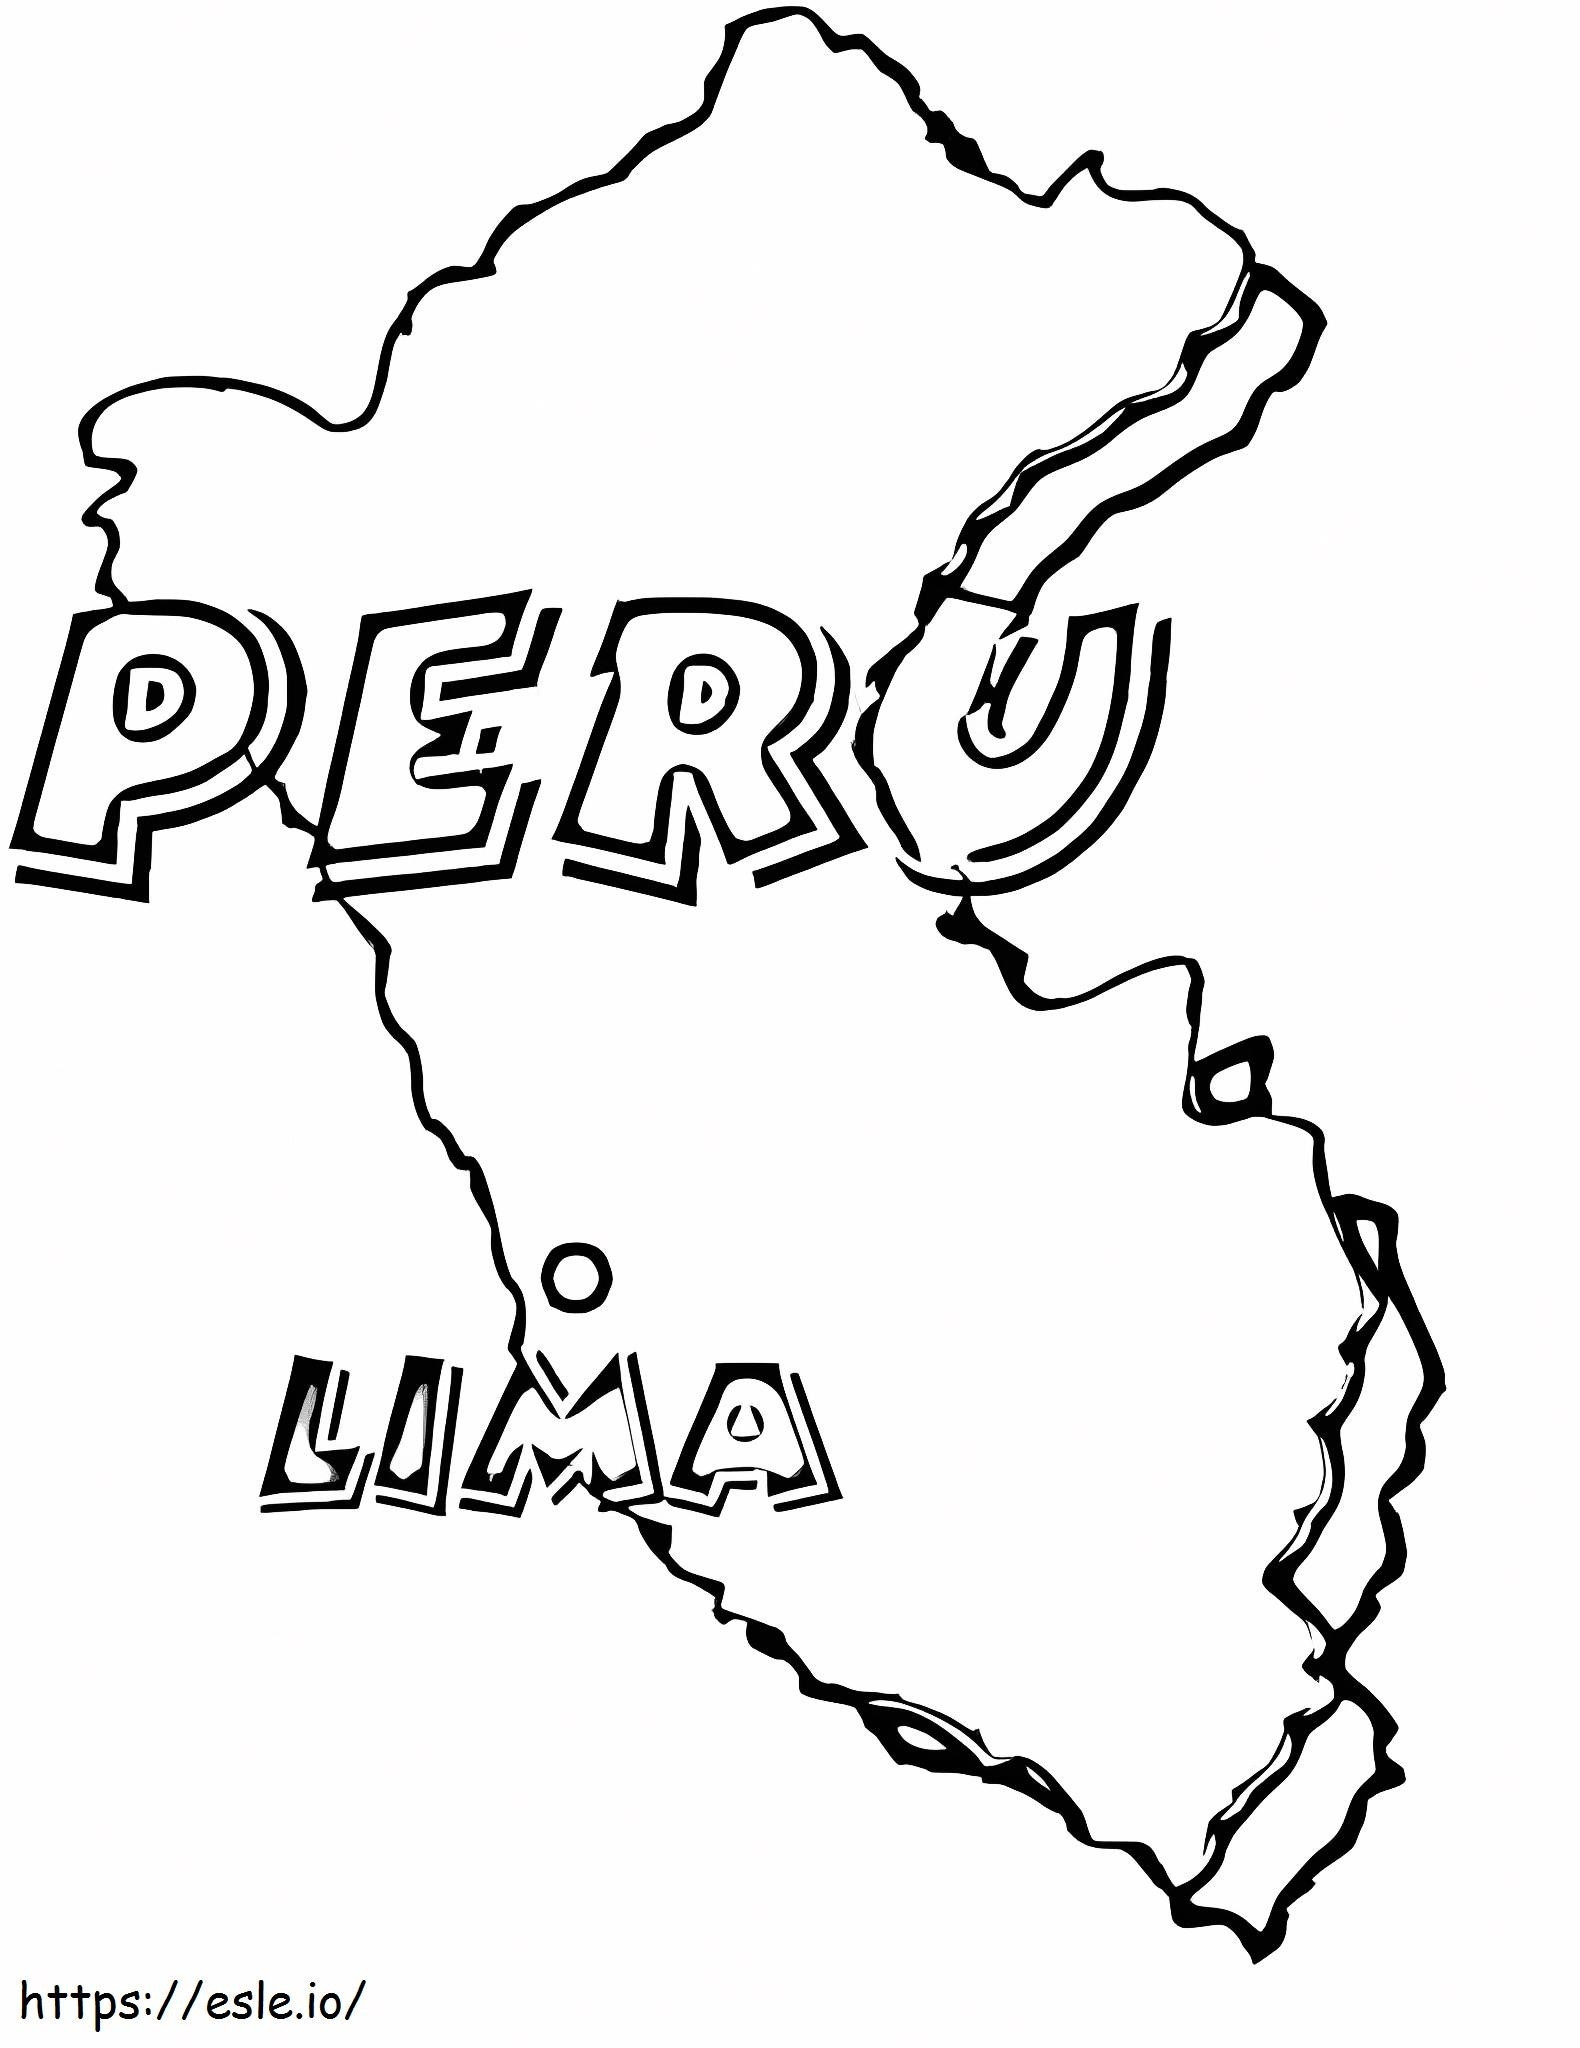 Peru Haritası boyama